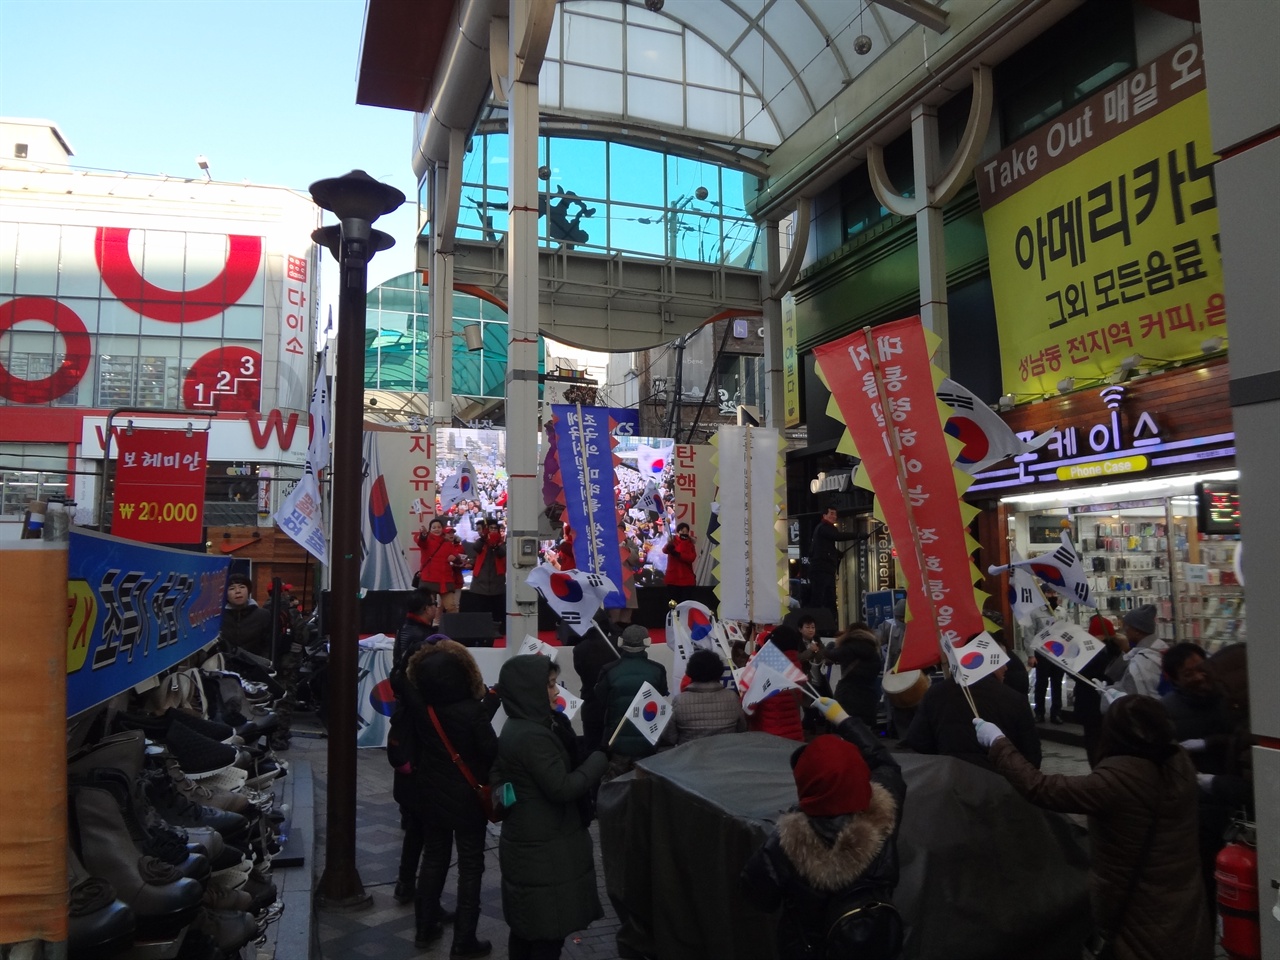 2017년 2월10일 울산광역시 중구 성남동 뉴코아아울렛 주변 젊음의 거리에서 태극기 집회를 진행하는 장면